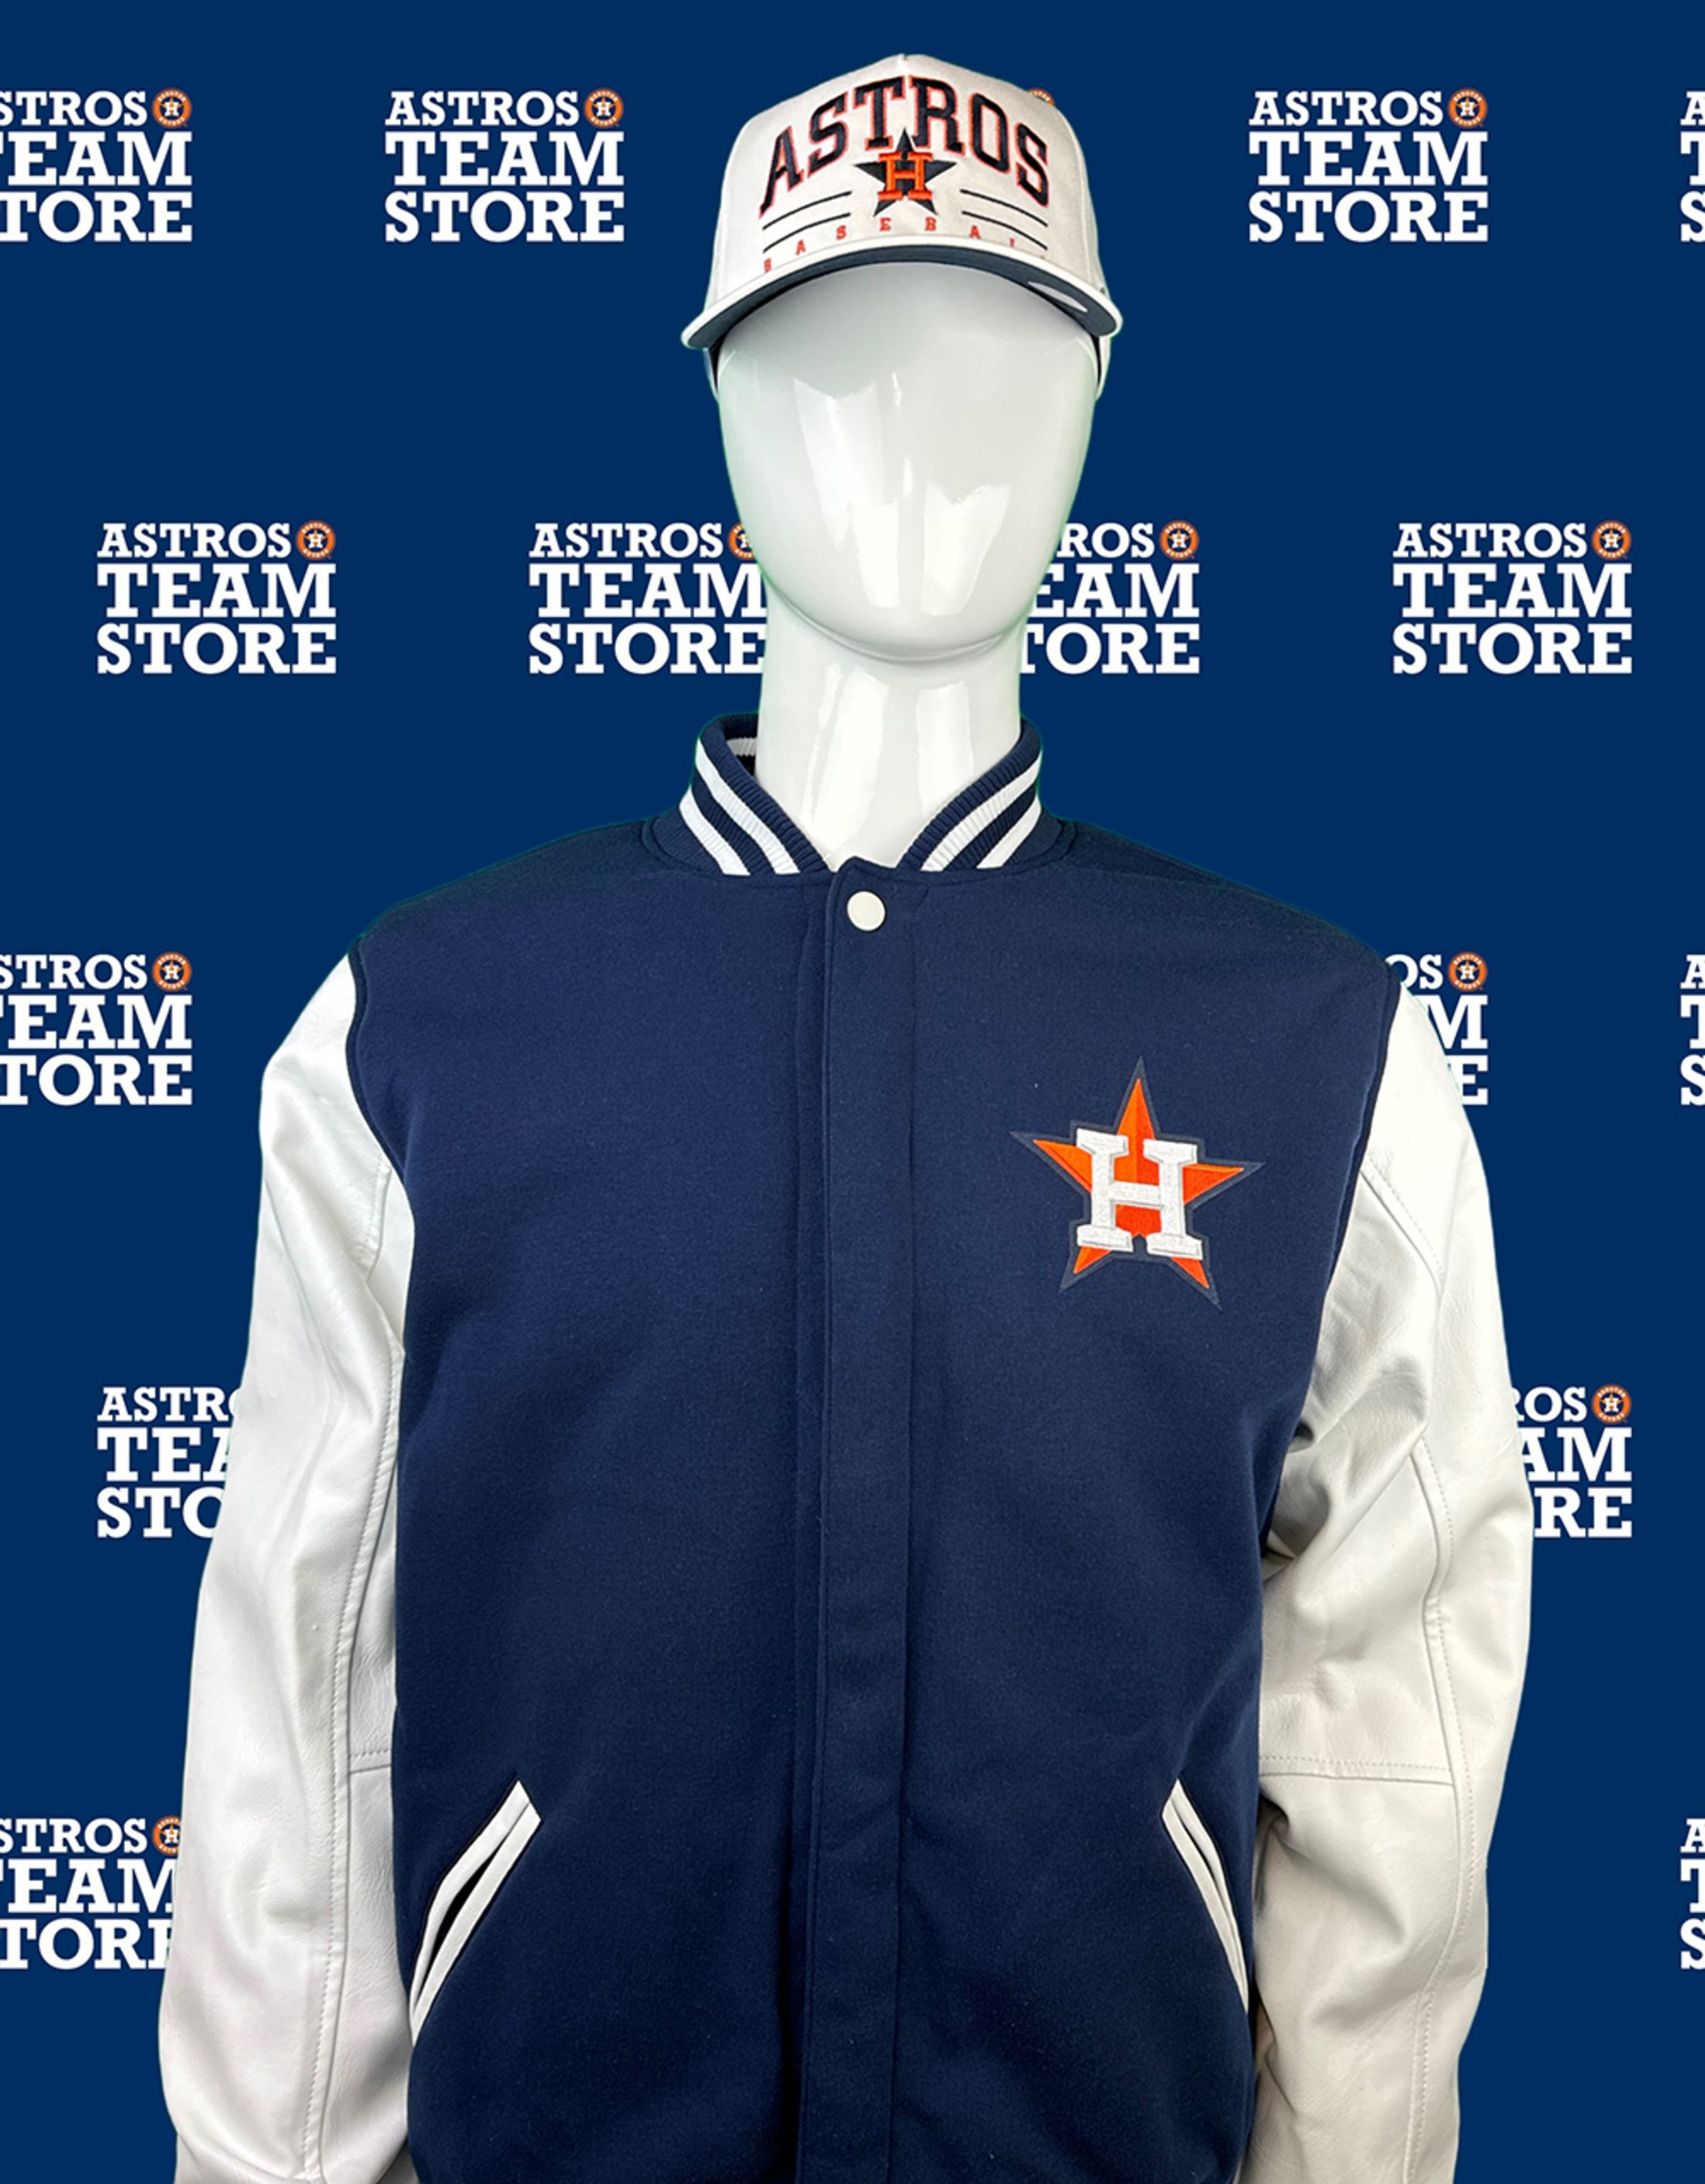 Houston Astros Clothing & Merchandise